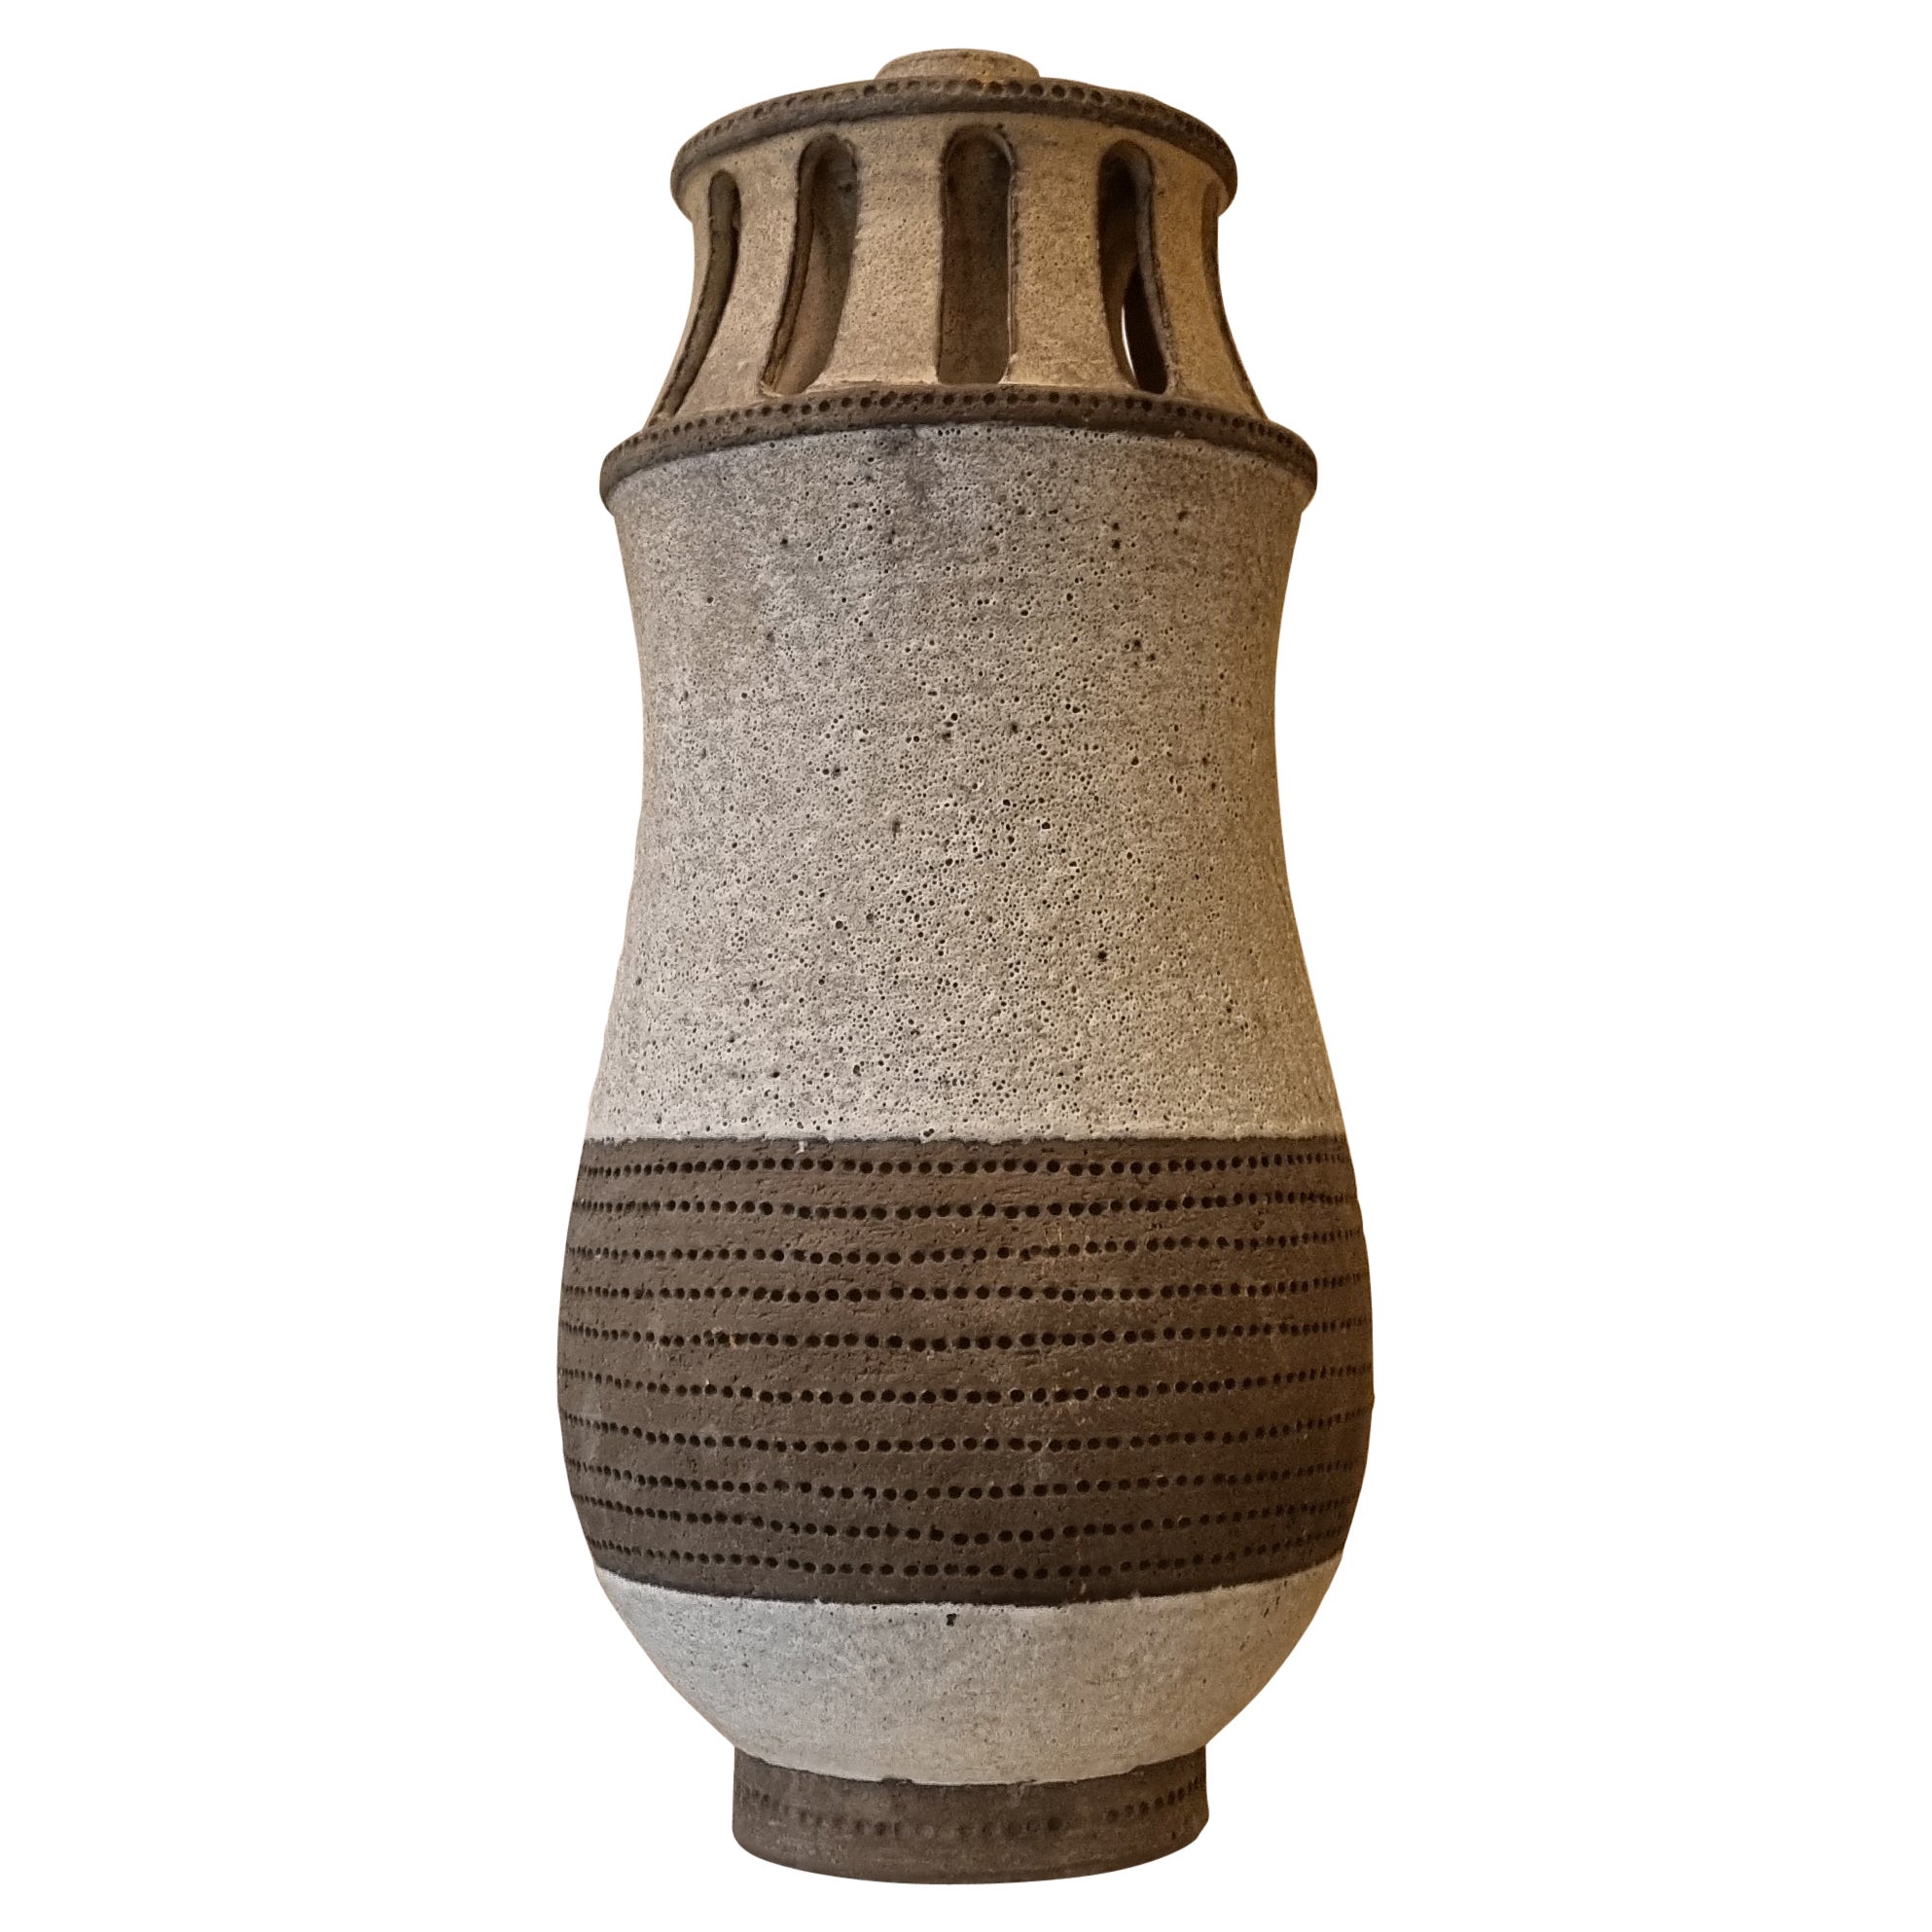 Vase porte-lampe d'Aldo Londi pour Ceramiche Bitossi, 1970 Signé.